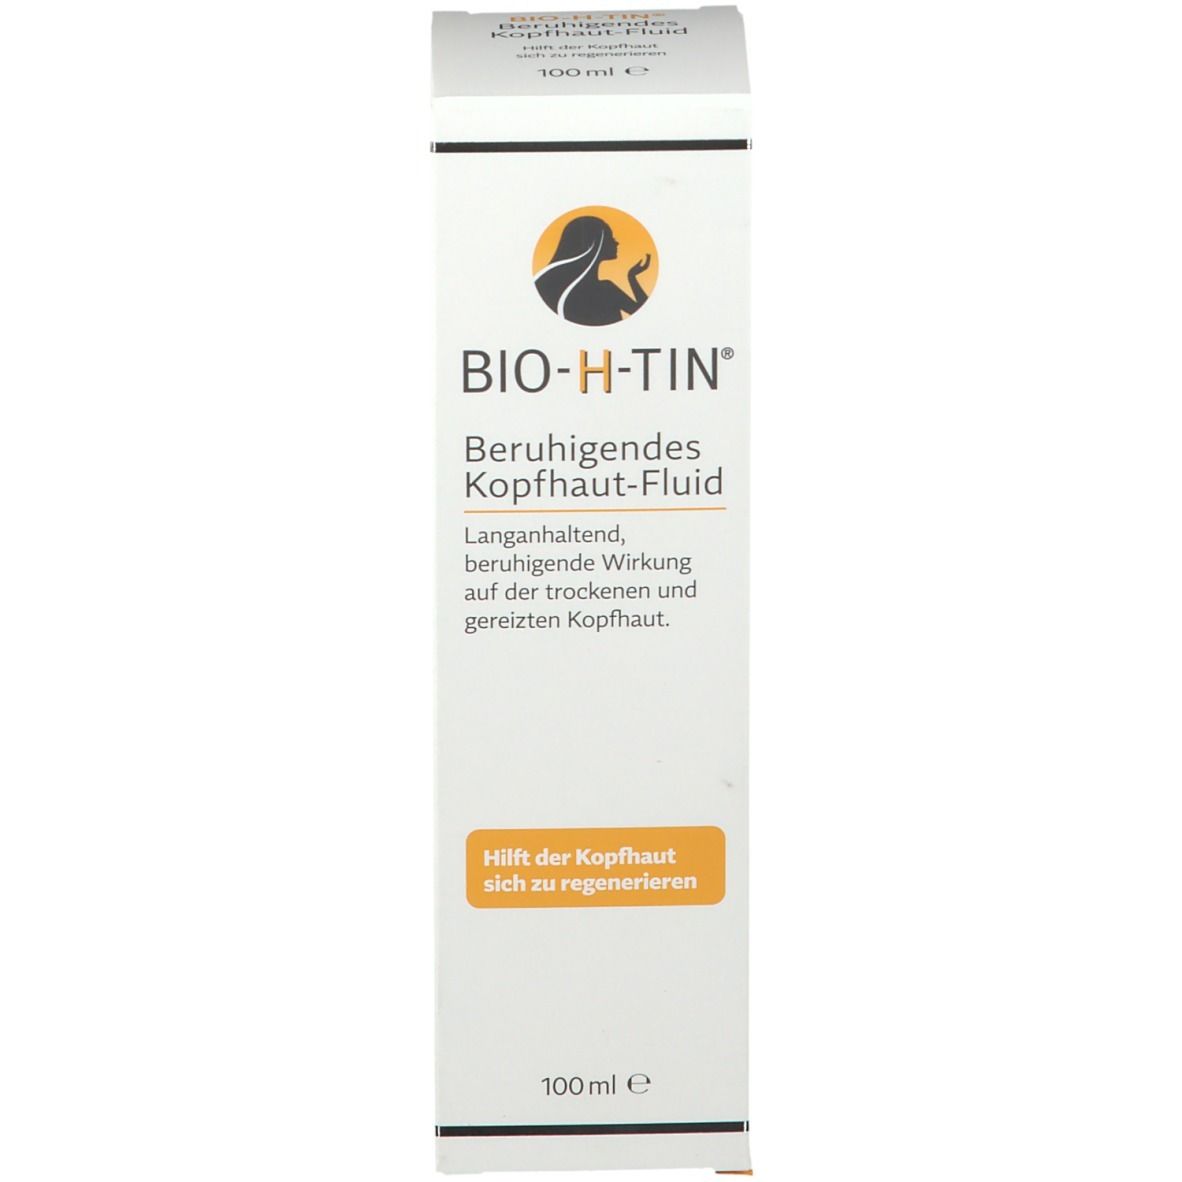 BIO-H-TIN® Beruhigendes Kopfhaut-Fluid